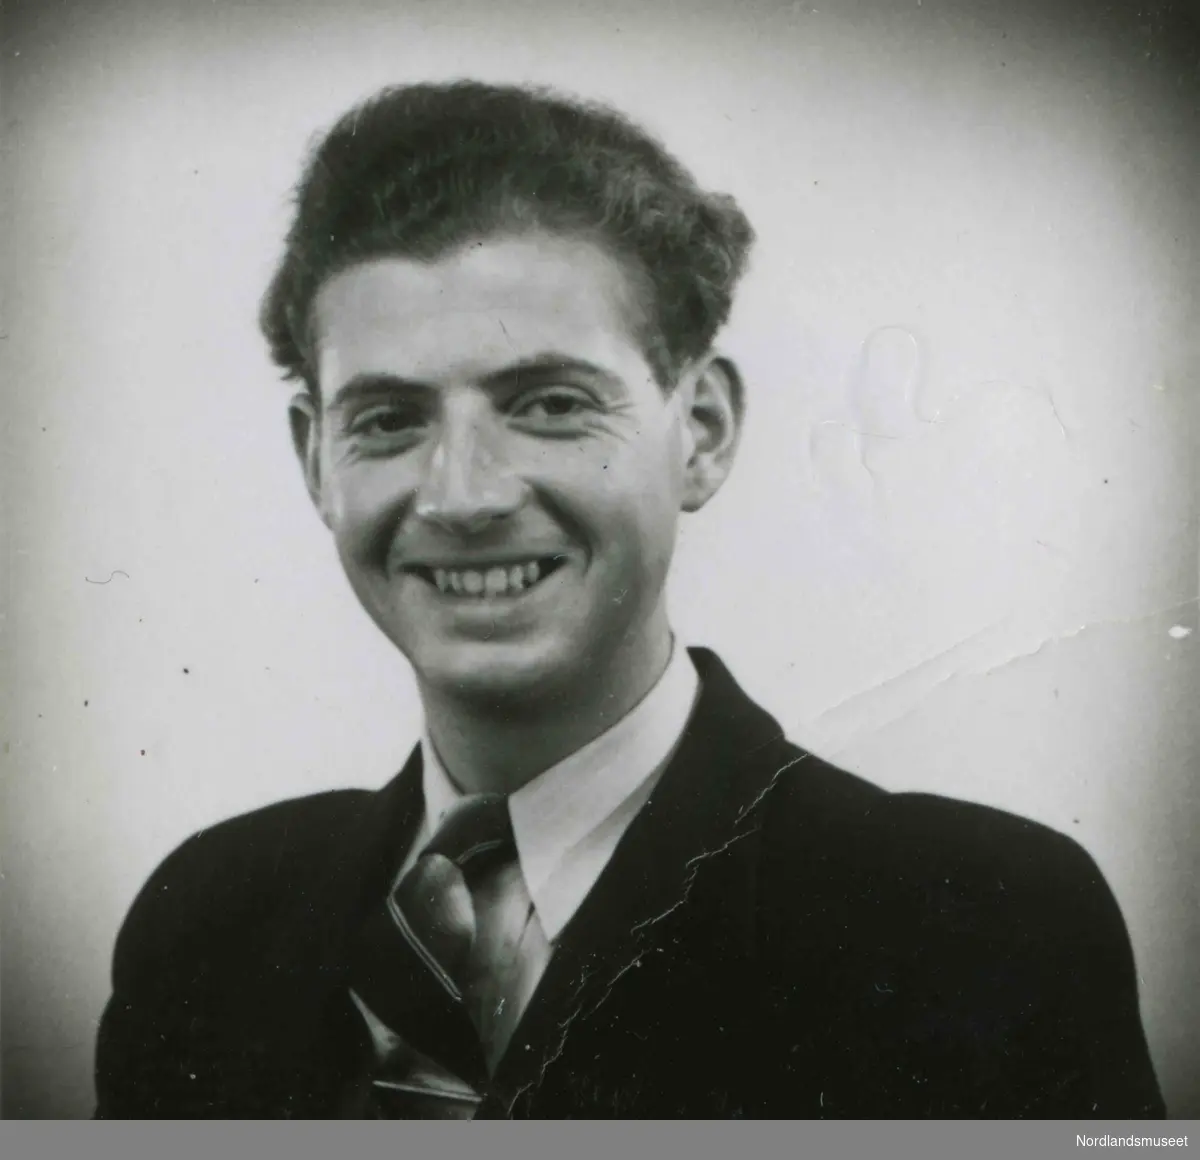 Brystbilde av ung mann med dress og slips. Bildetekst: "Arthur Moss 1942".